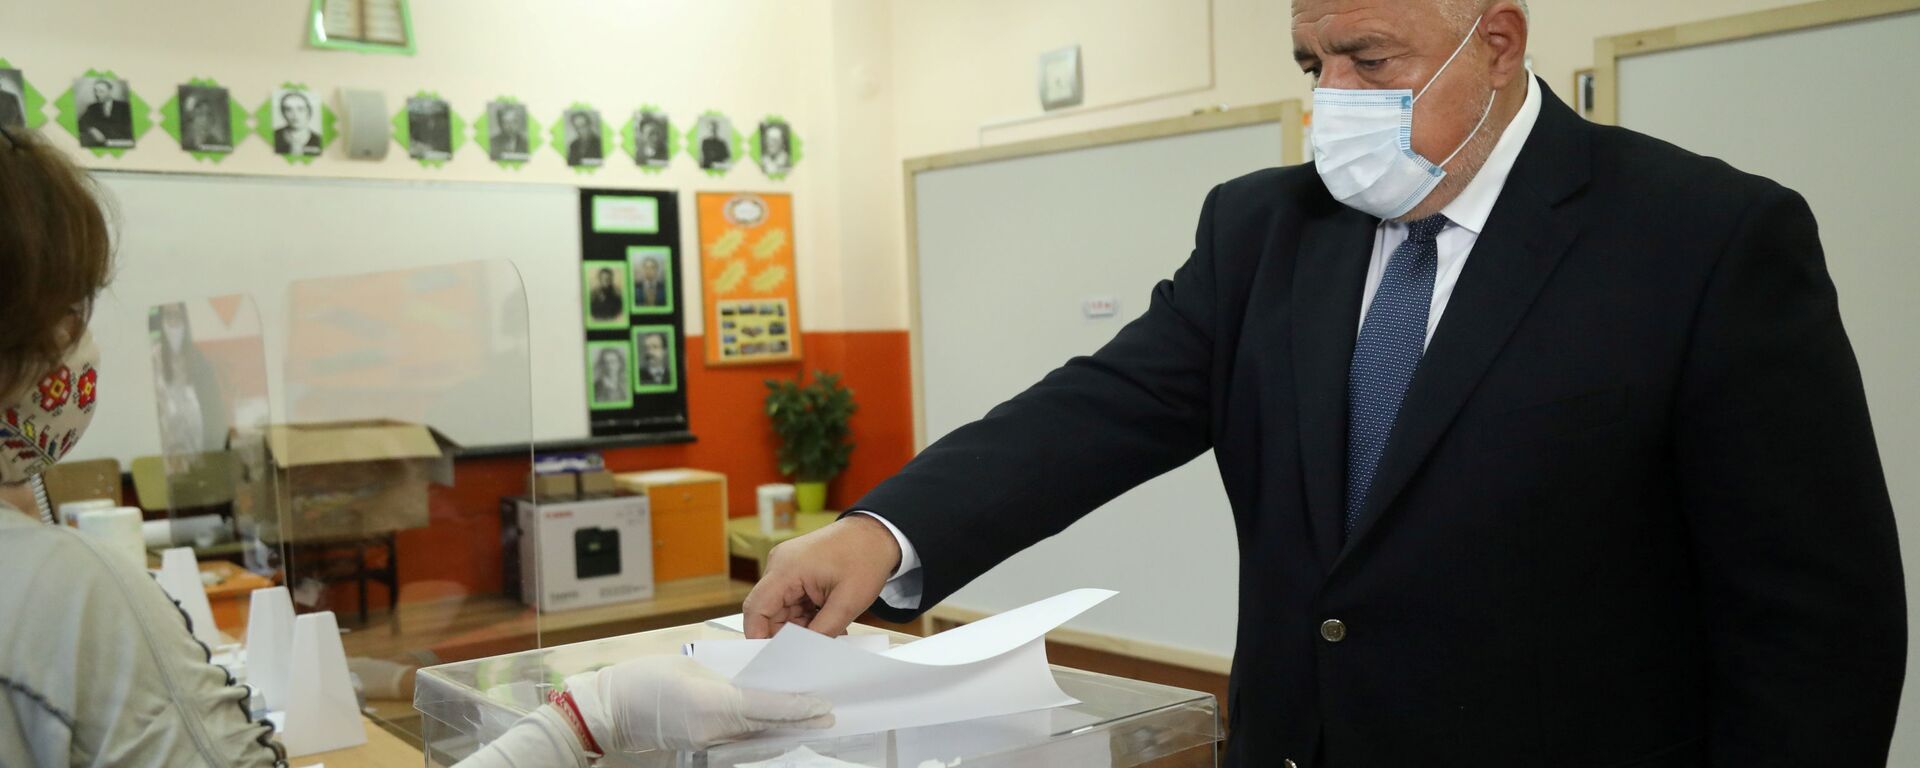 Bugarski premijer Bojko Borisov glasa na parlamentarnim izborima u Sofiji. - Sputnik Srbija, 1920, 07.04.2021